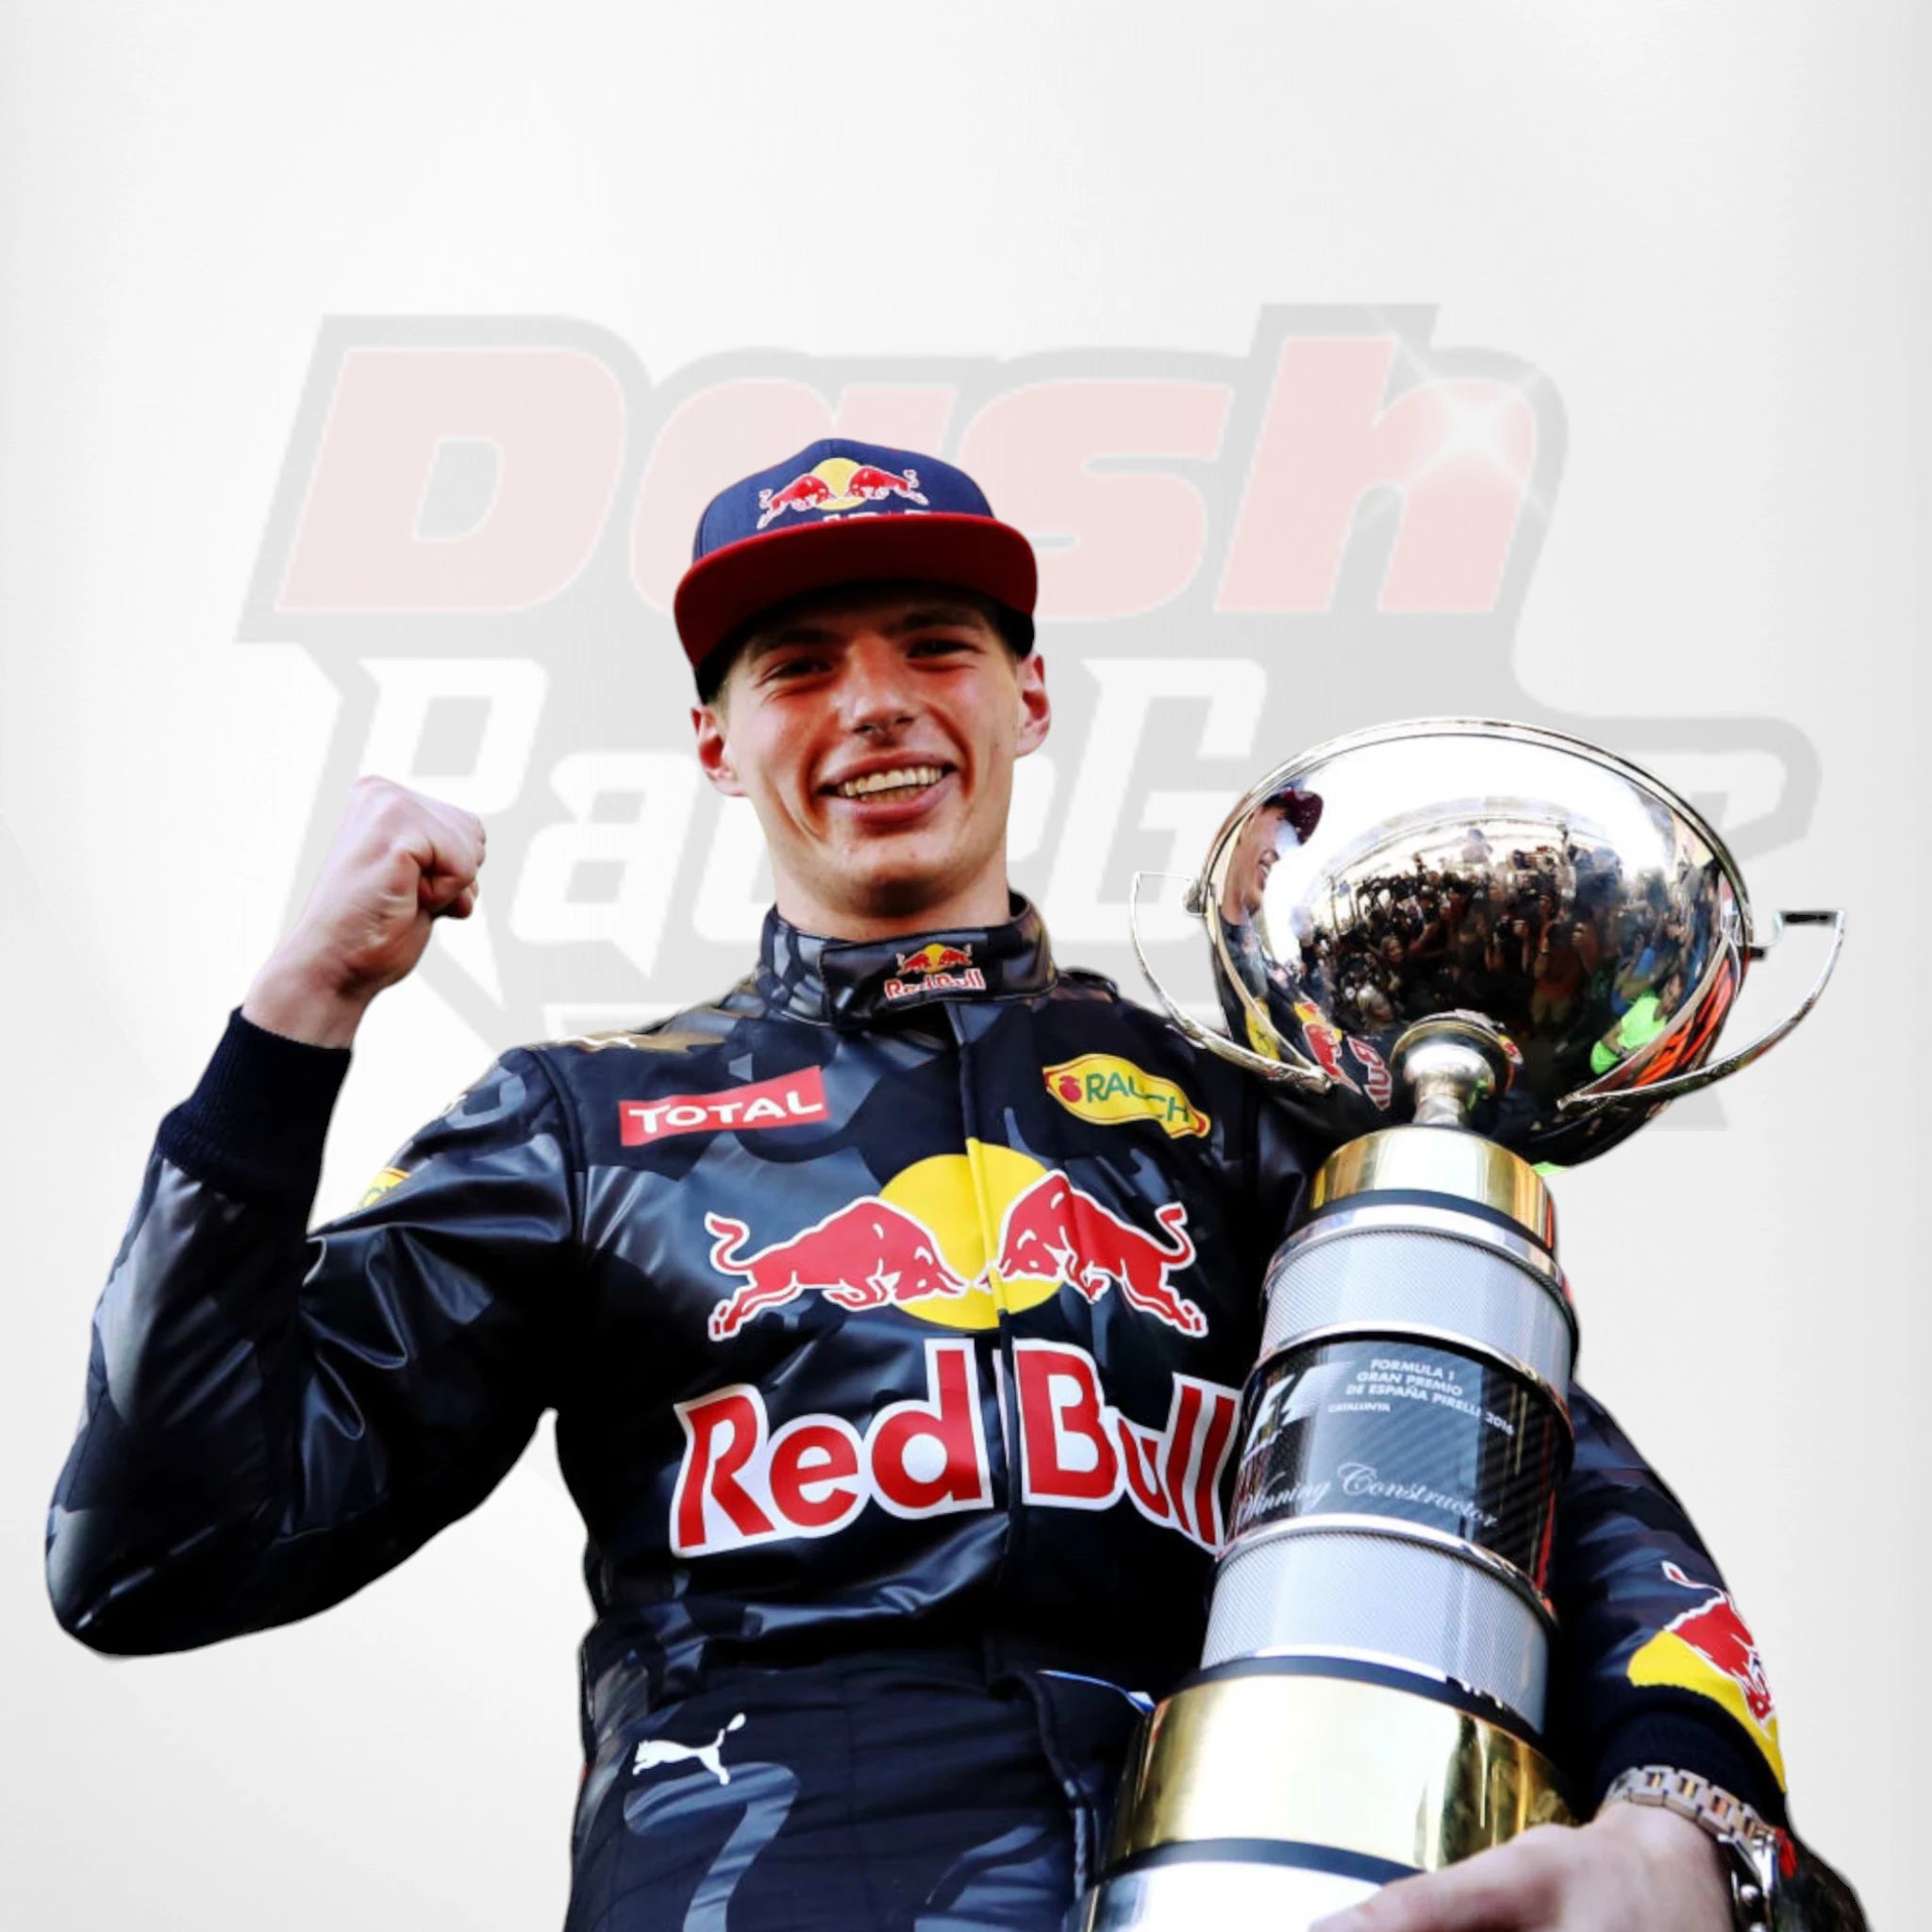 2016 Red Bull Max Verstappen F1 Race Suit